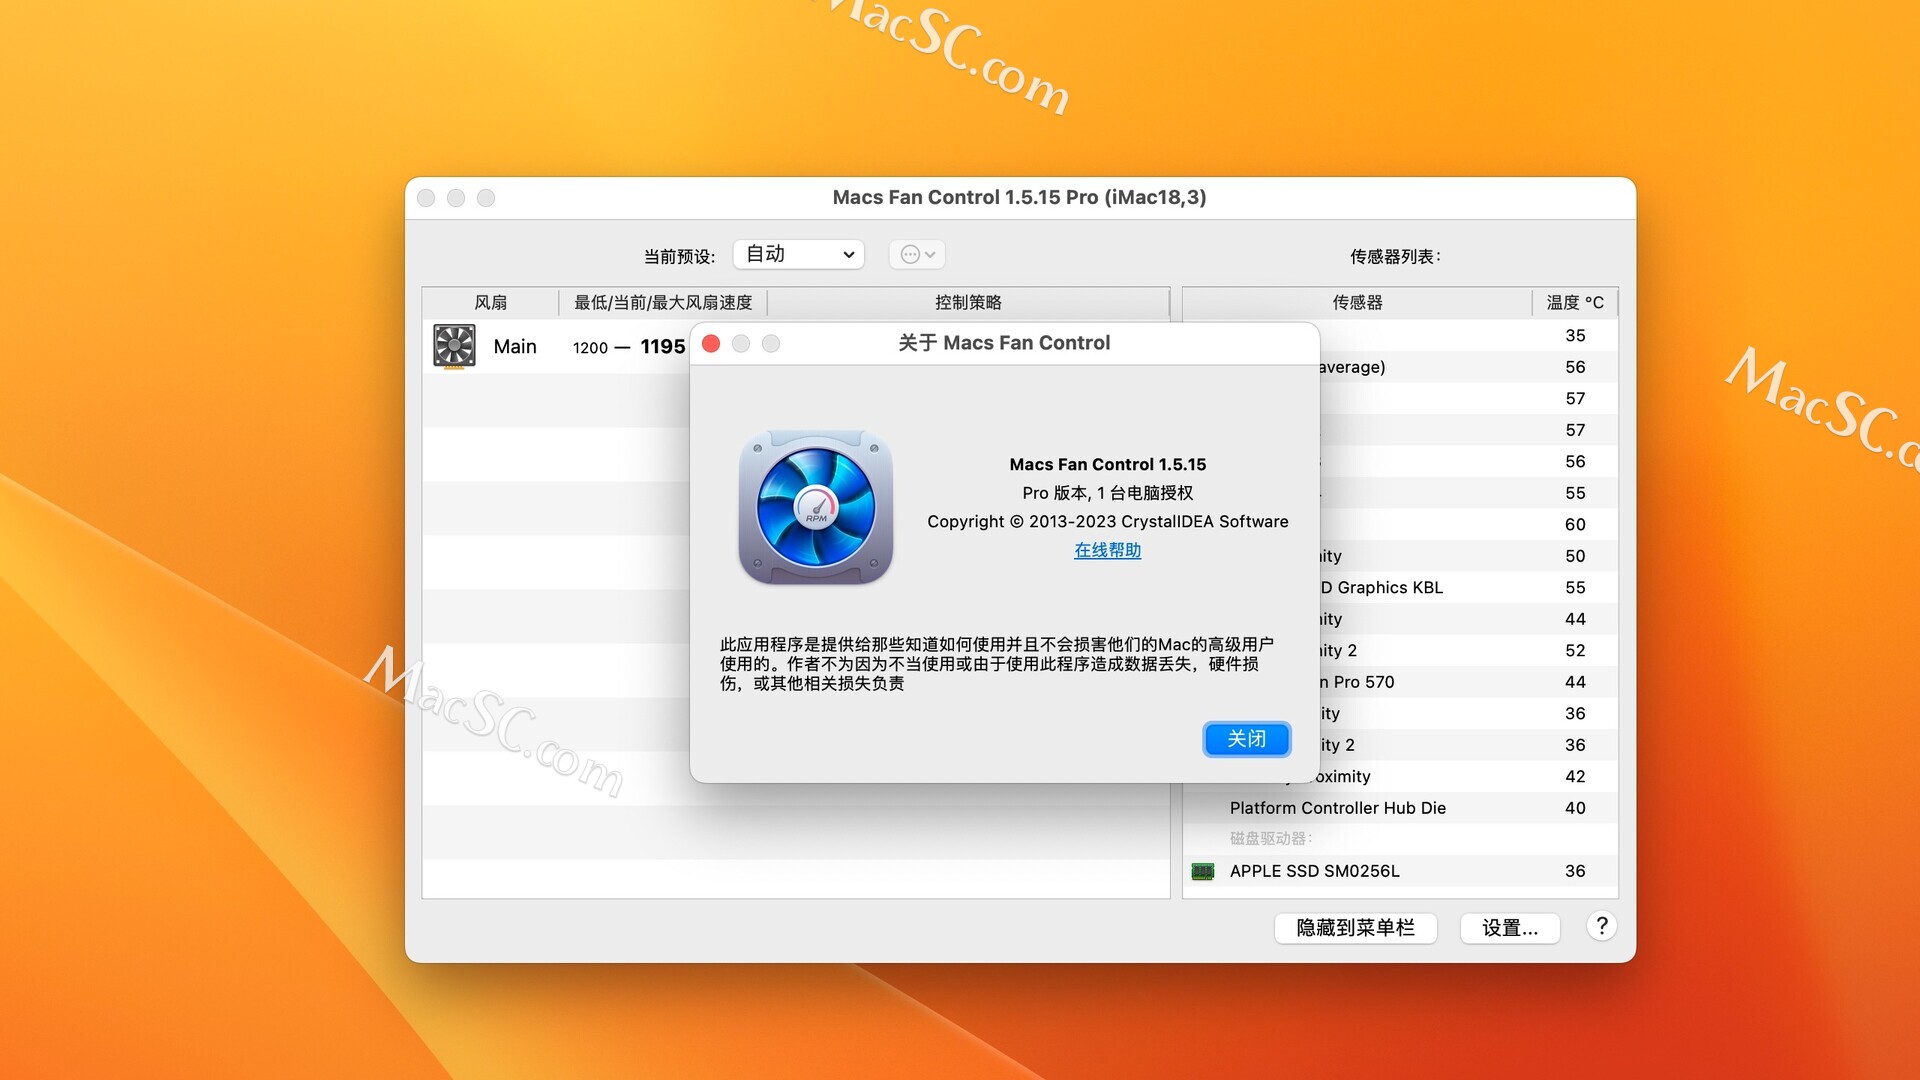 macs fan control pro license